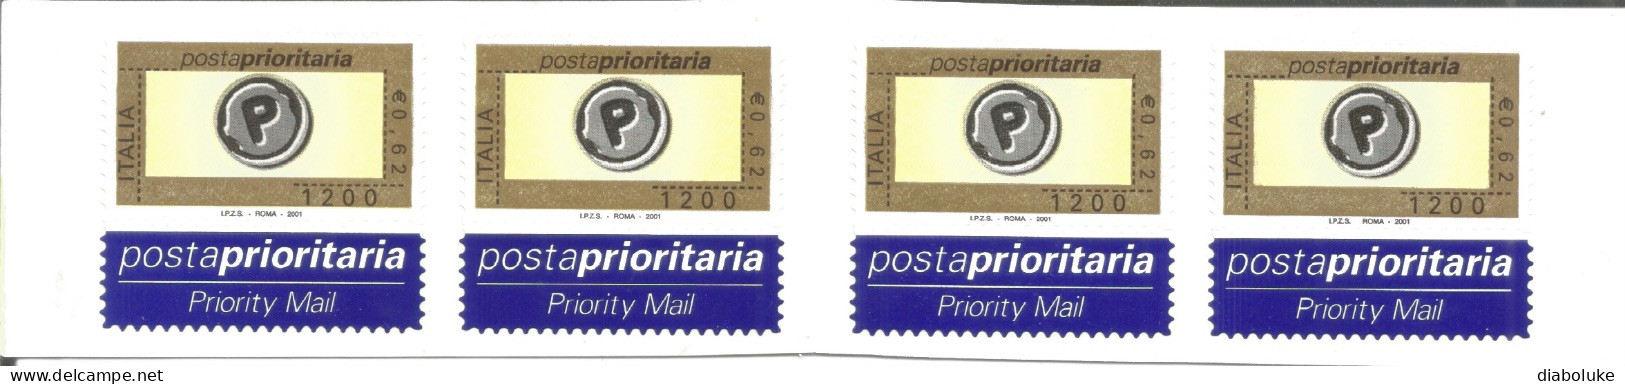 (REPUBBLICA ITALIANA) 2001, POSTA PRIORITARIA - Libretto Nuovo - Carnets